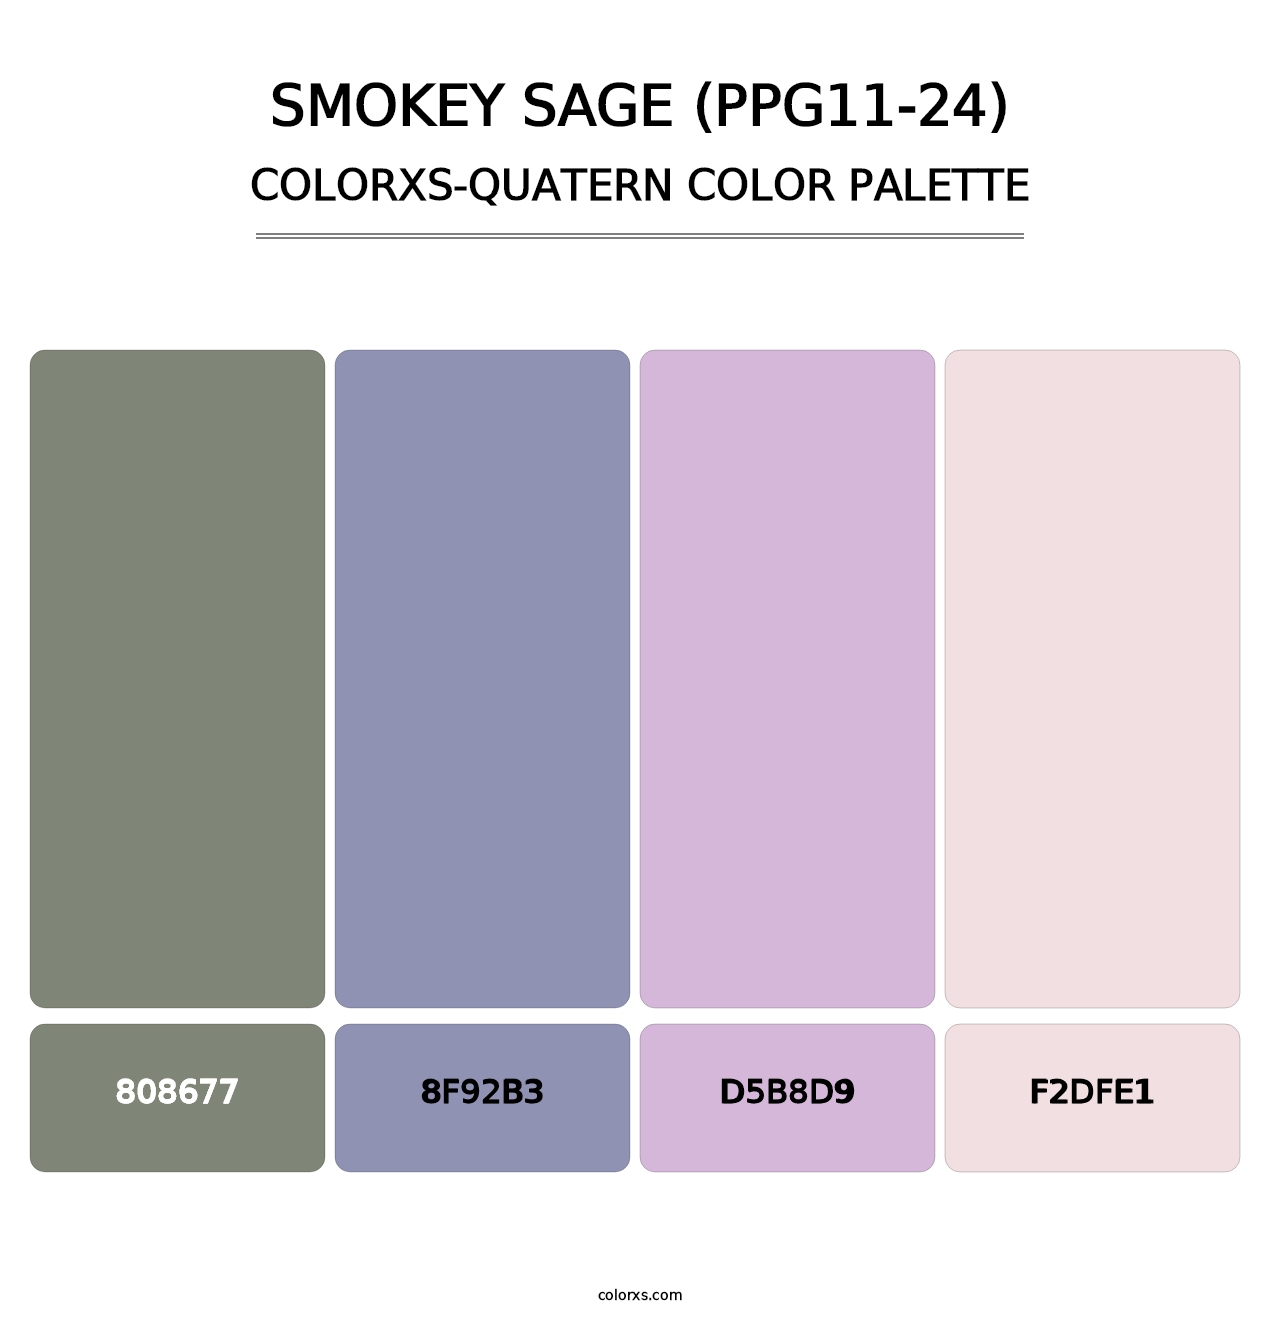 Smokey Sage (PPG11-24) - Colorxs Quatern Palette